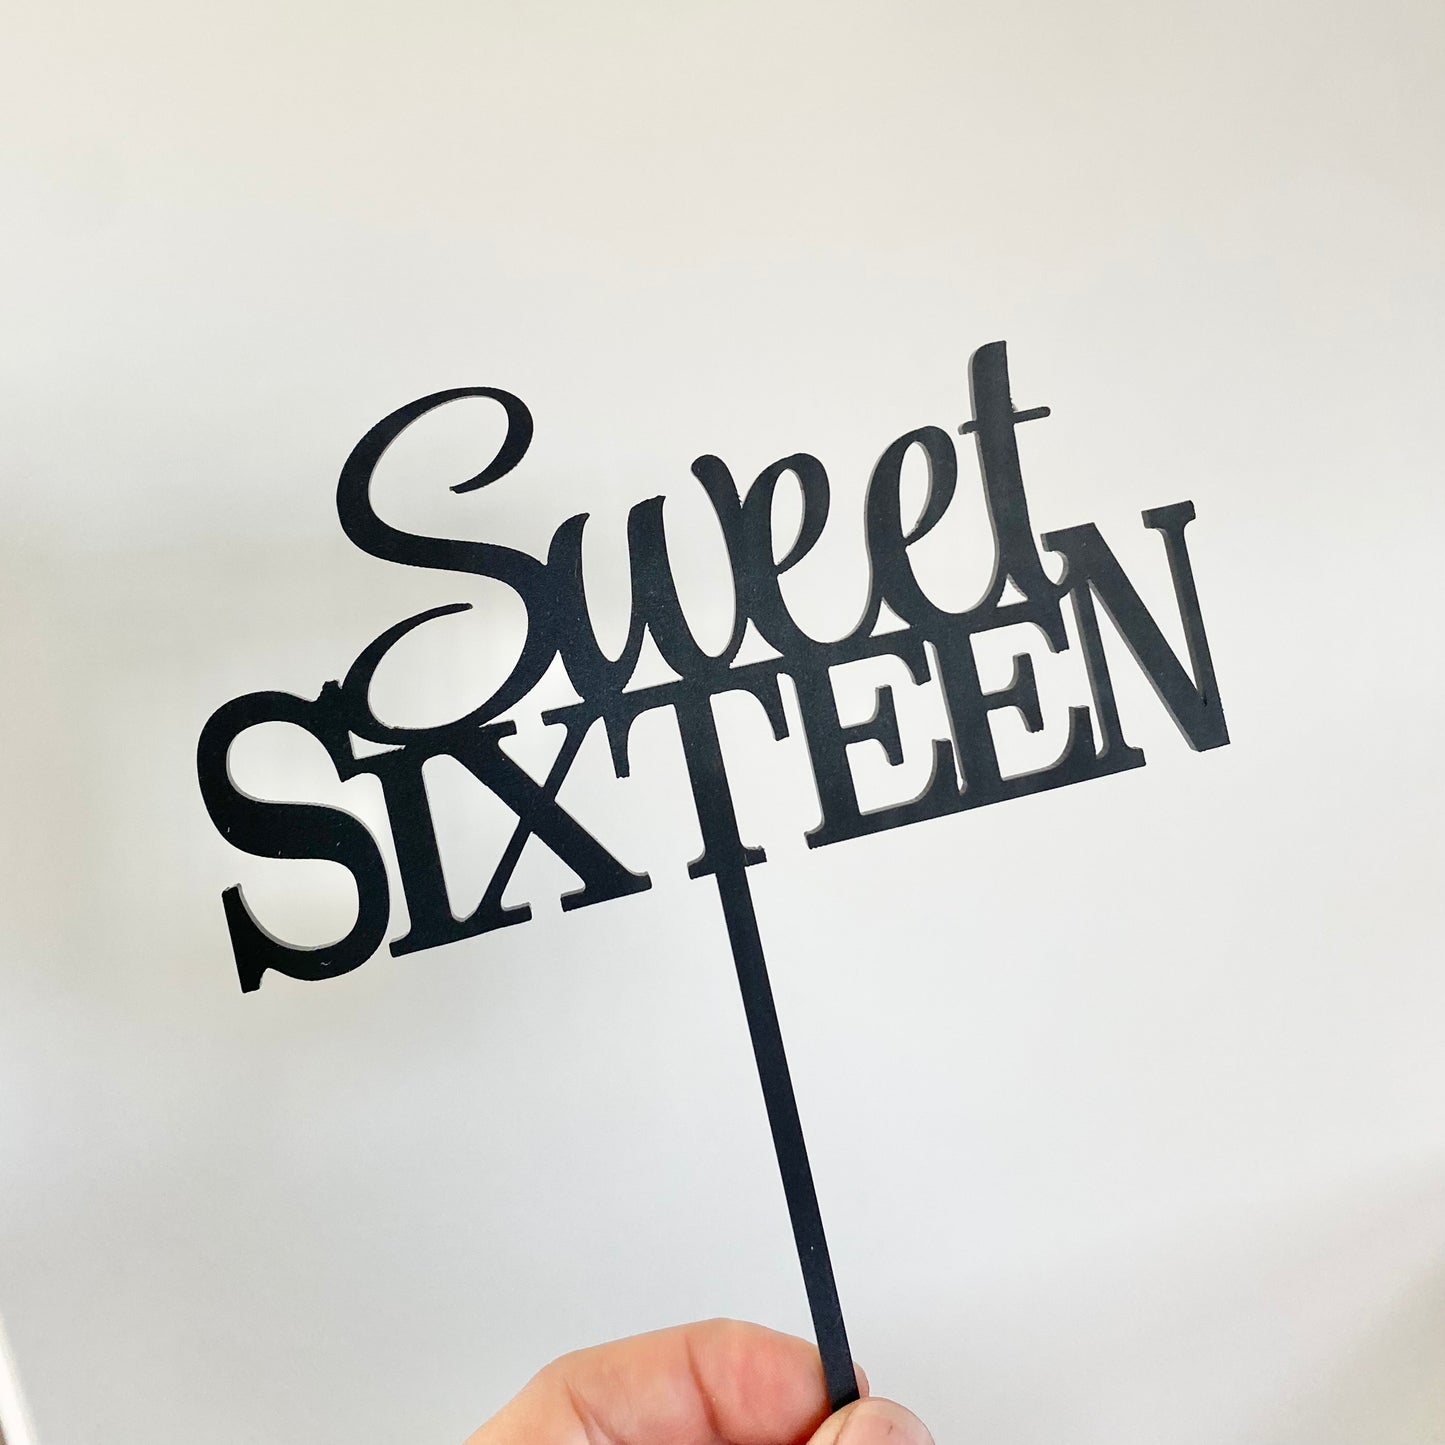 Sweet sixteen topper